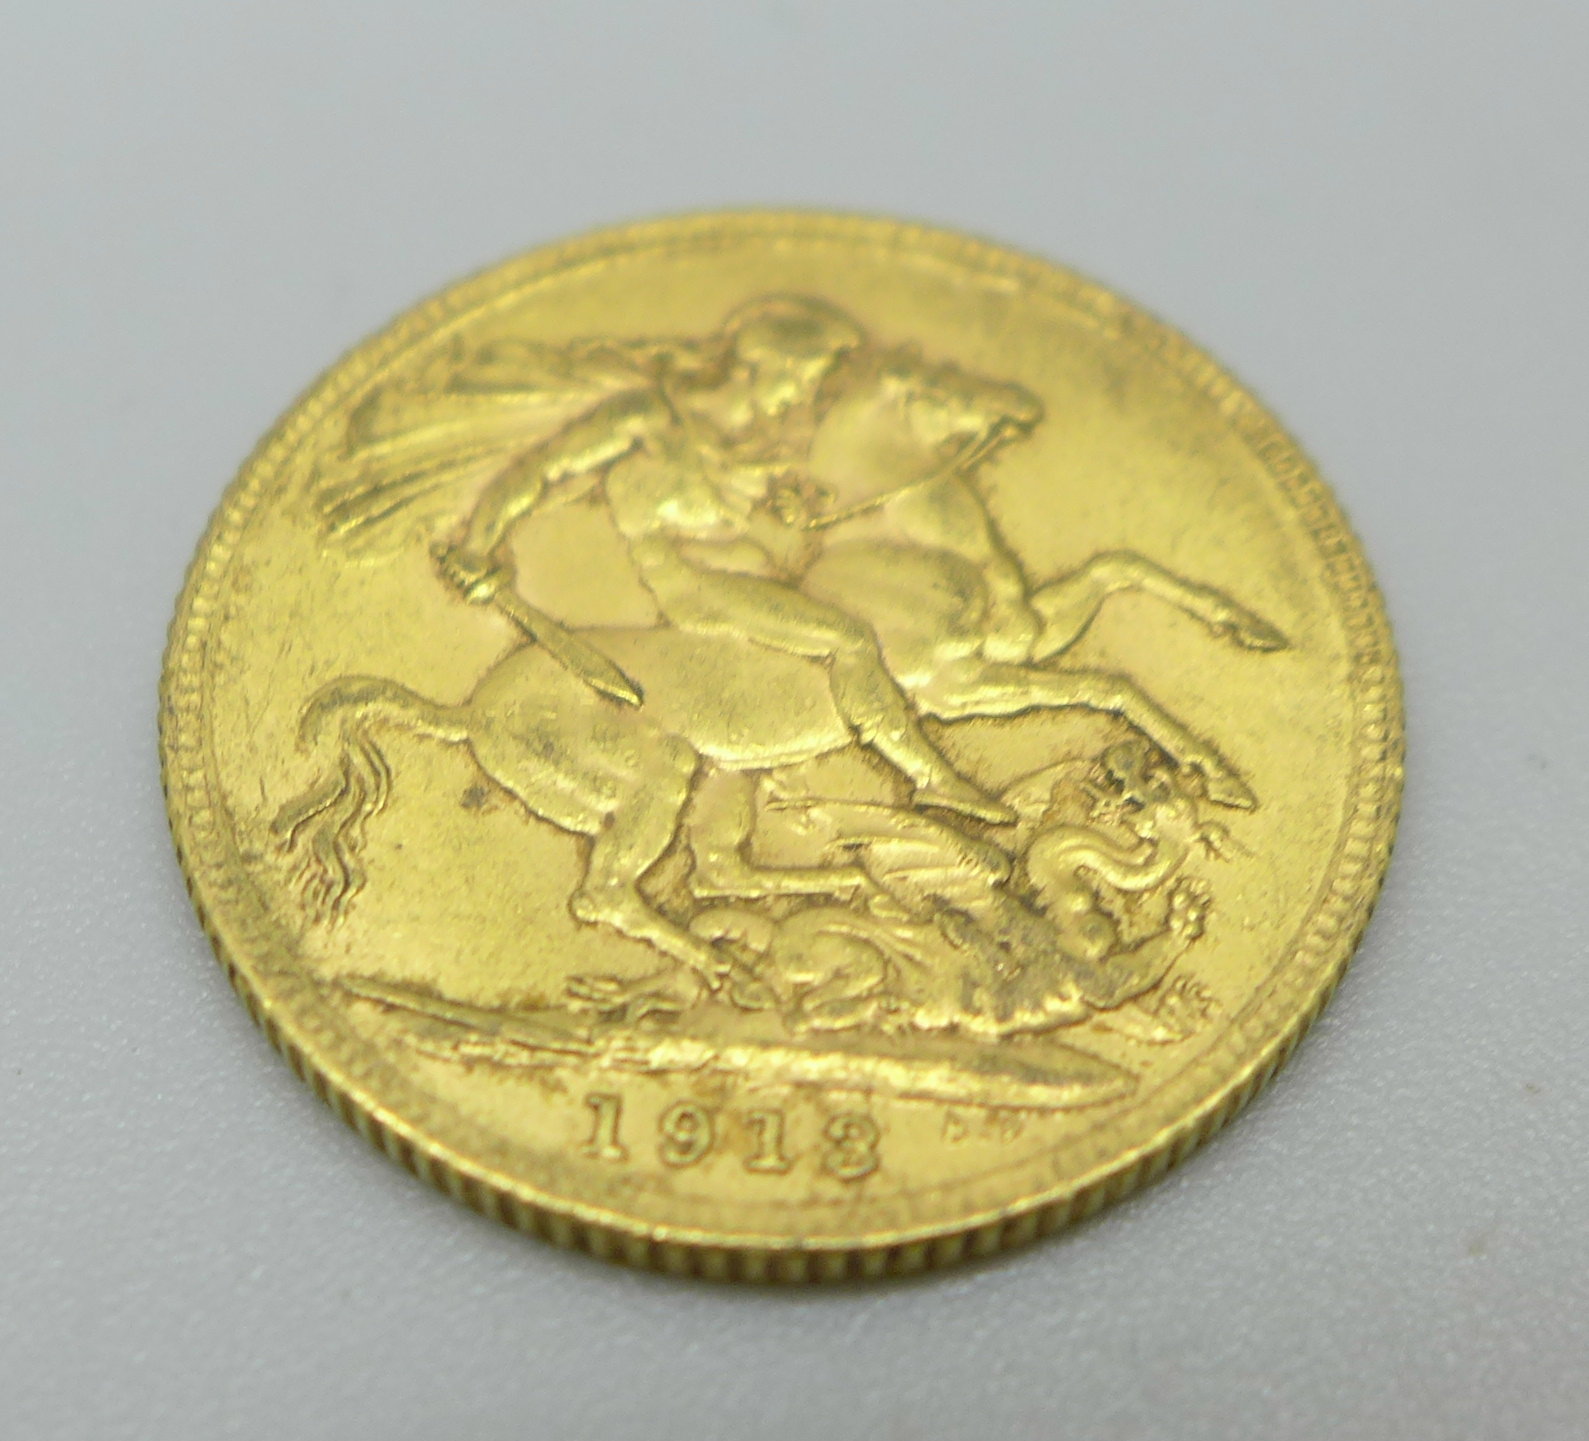 A 1913 gold sovereign